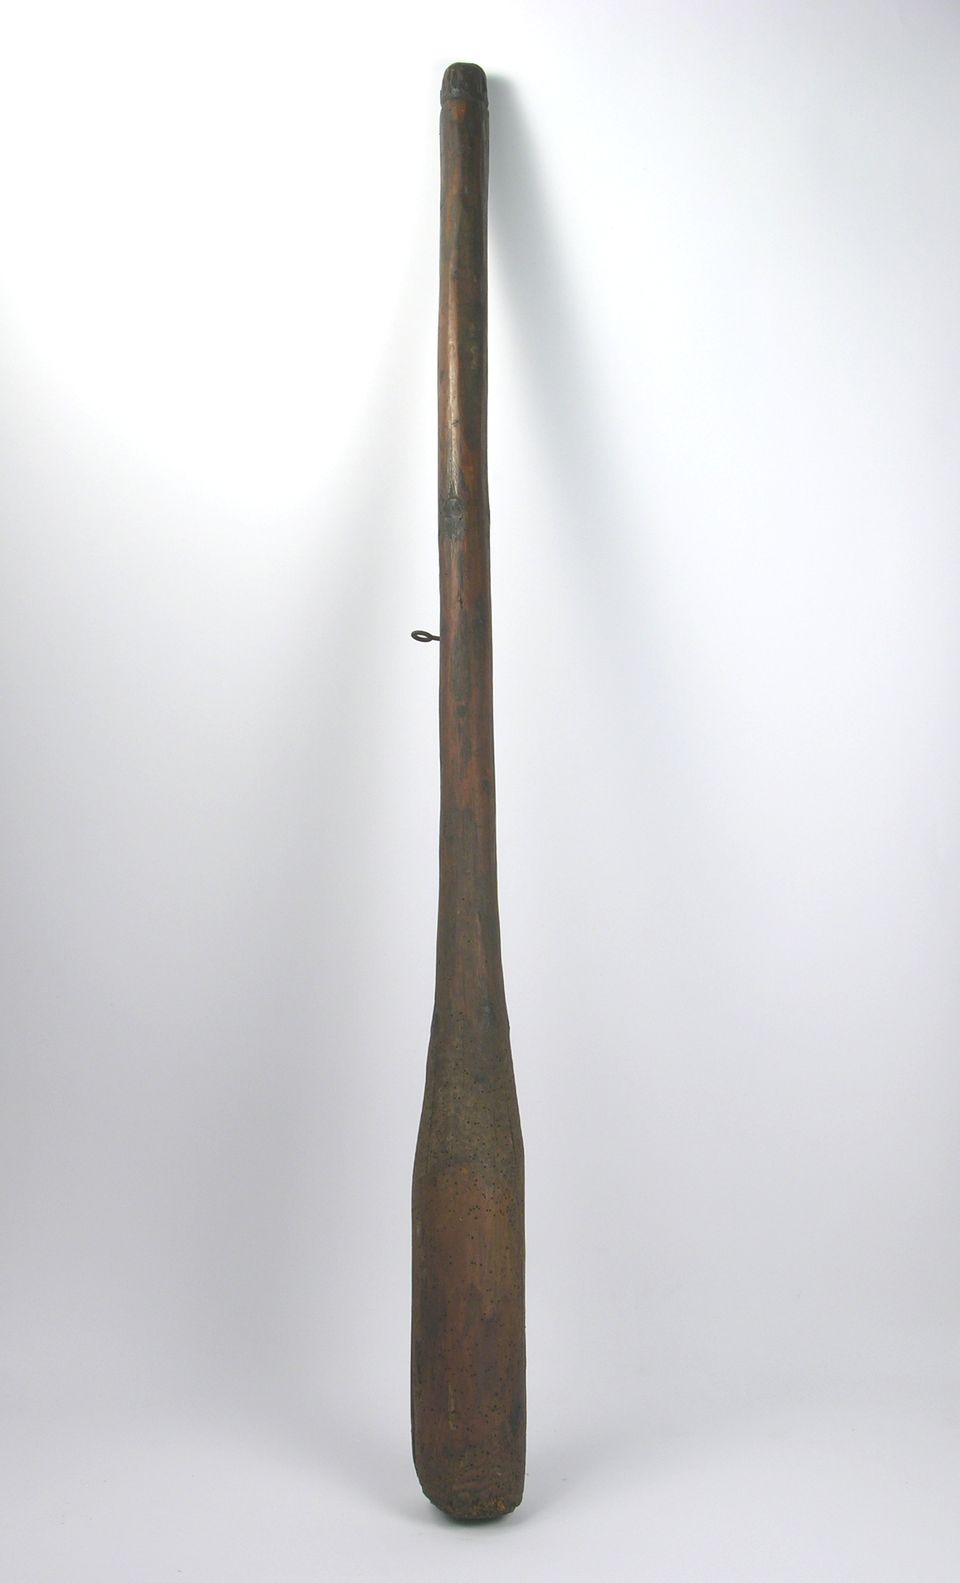 Mosterkolben in Form einer Keule (Historisches Museum der Pfalz, Speyer CC BY)